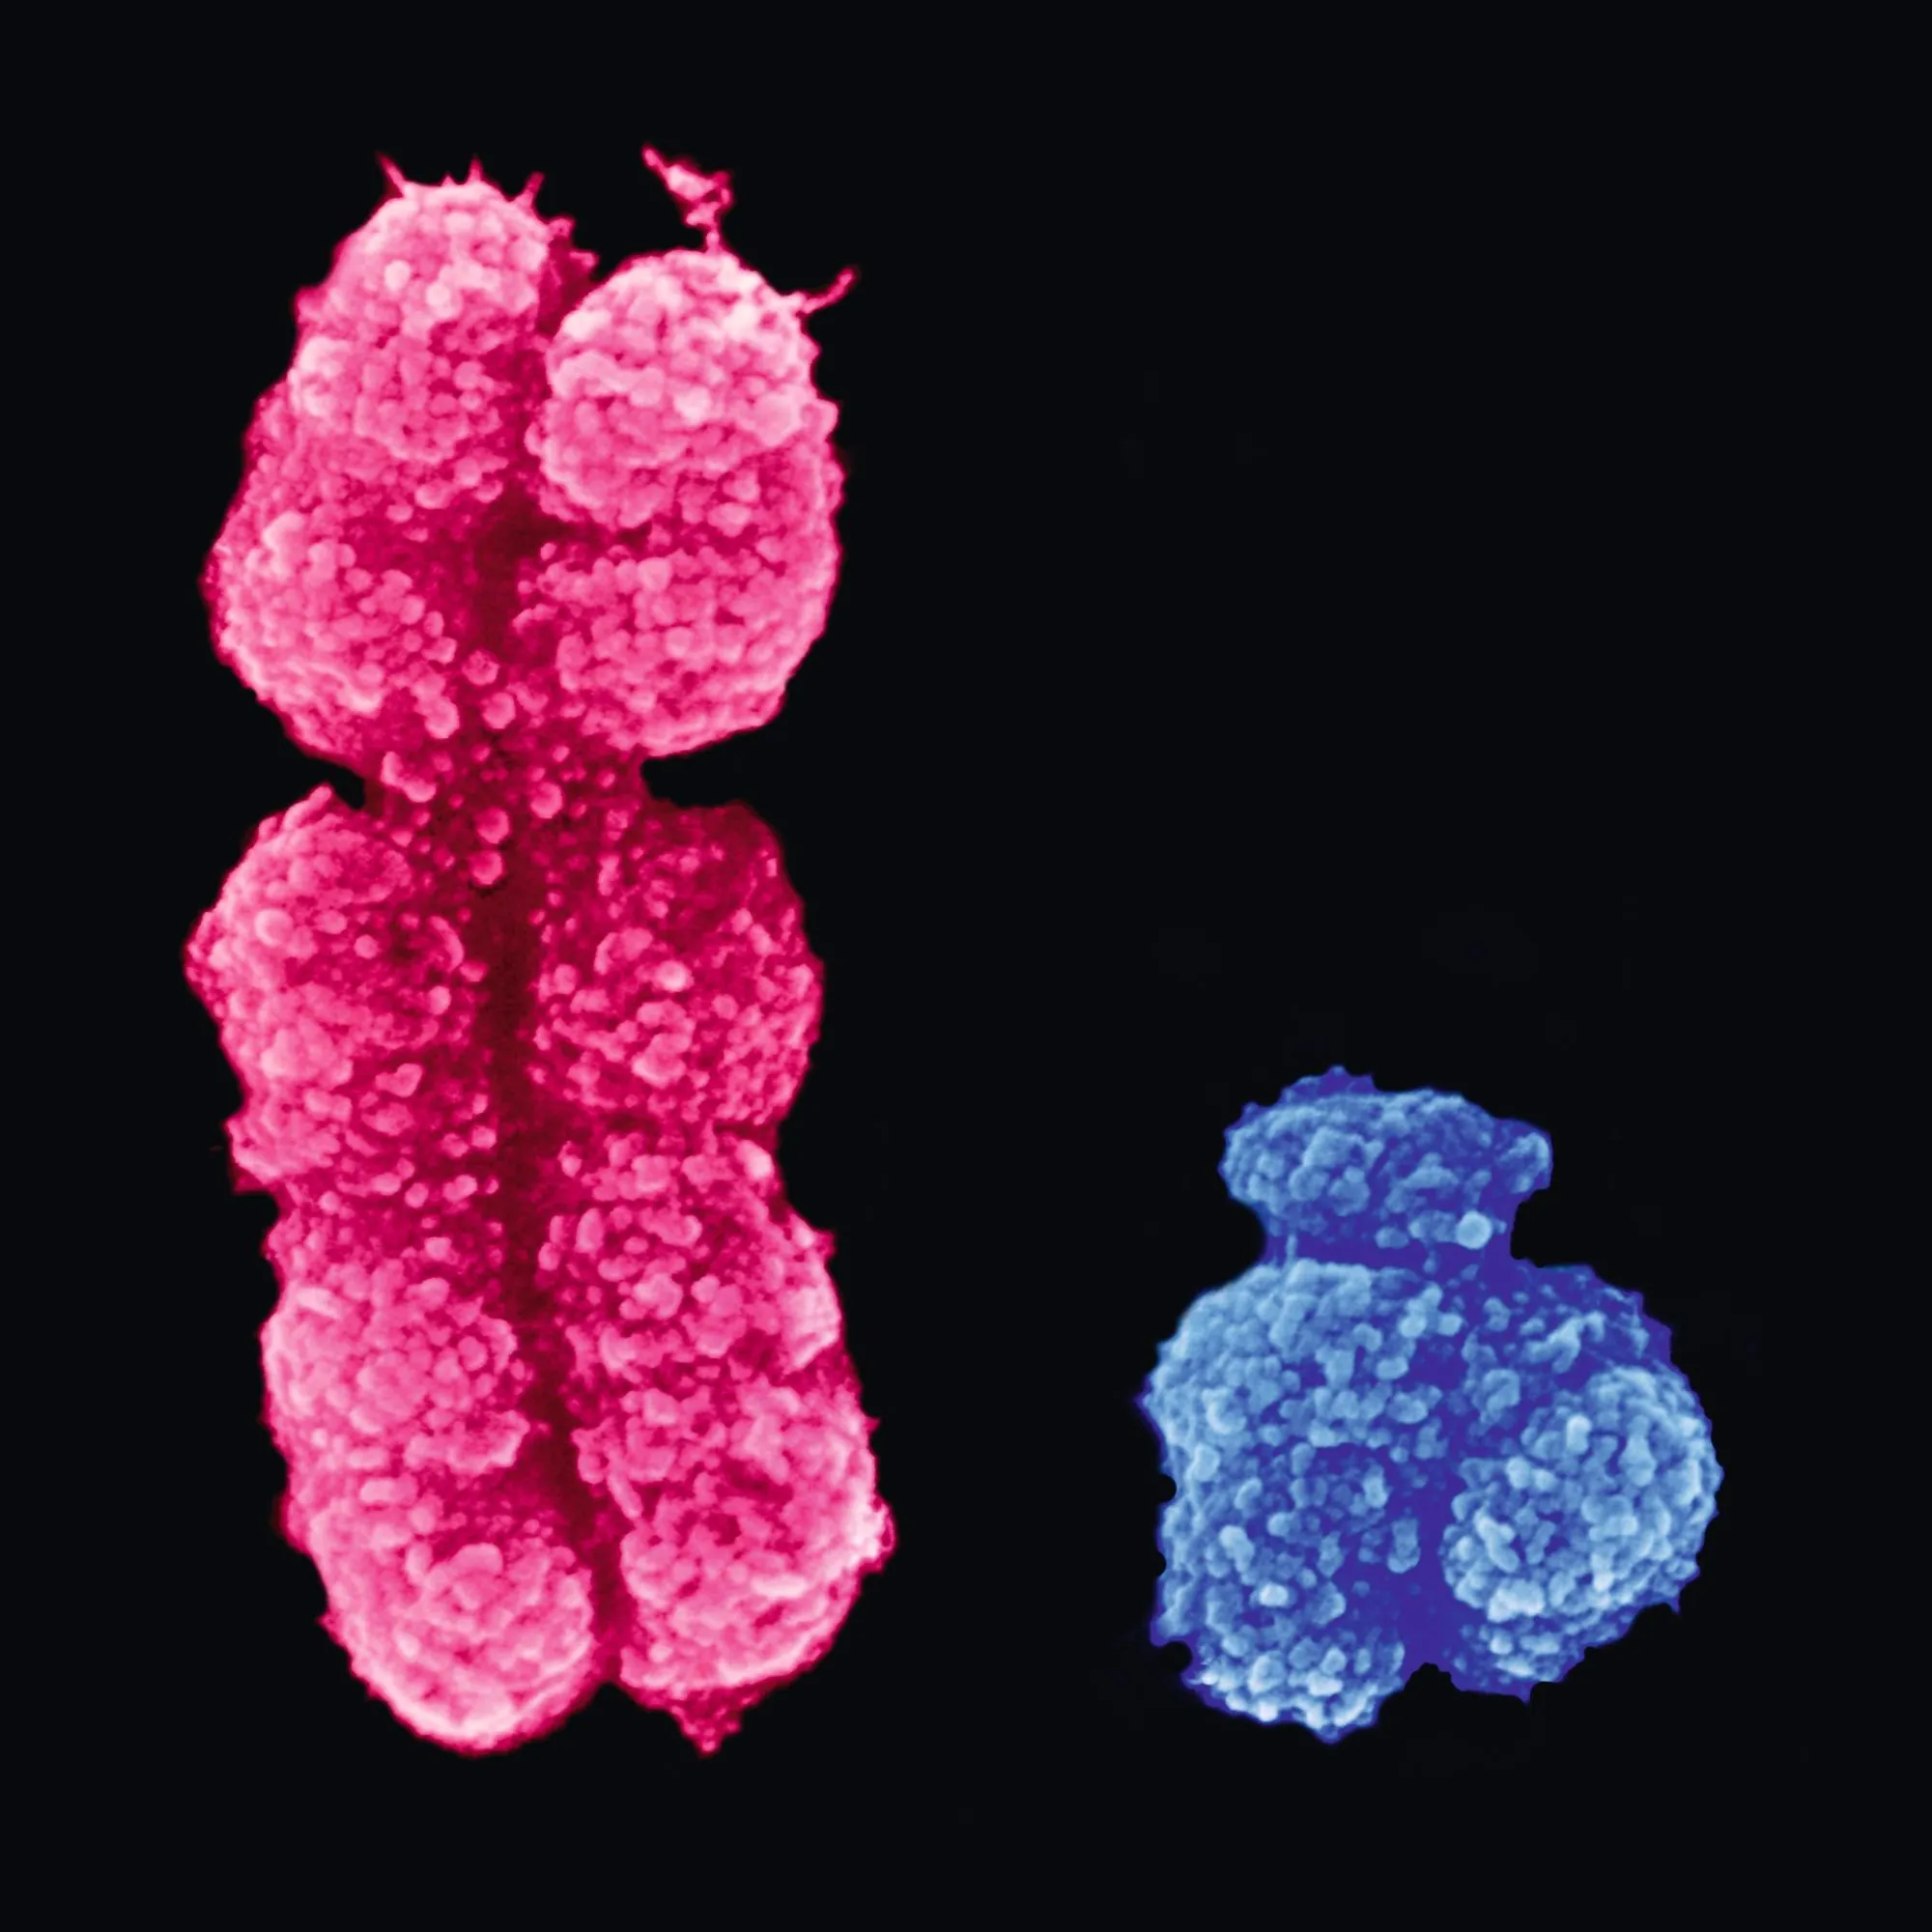 Chromosomes sexuels humains observés au microscope électronique à balayage (X à gauche et Y à droite).